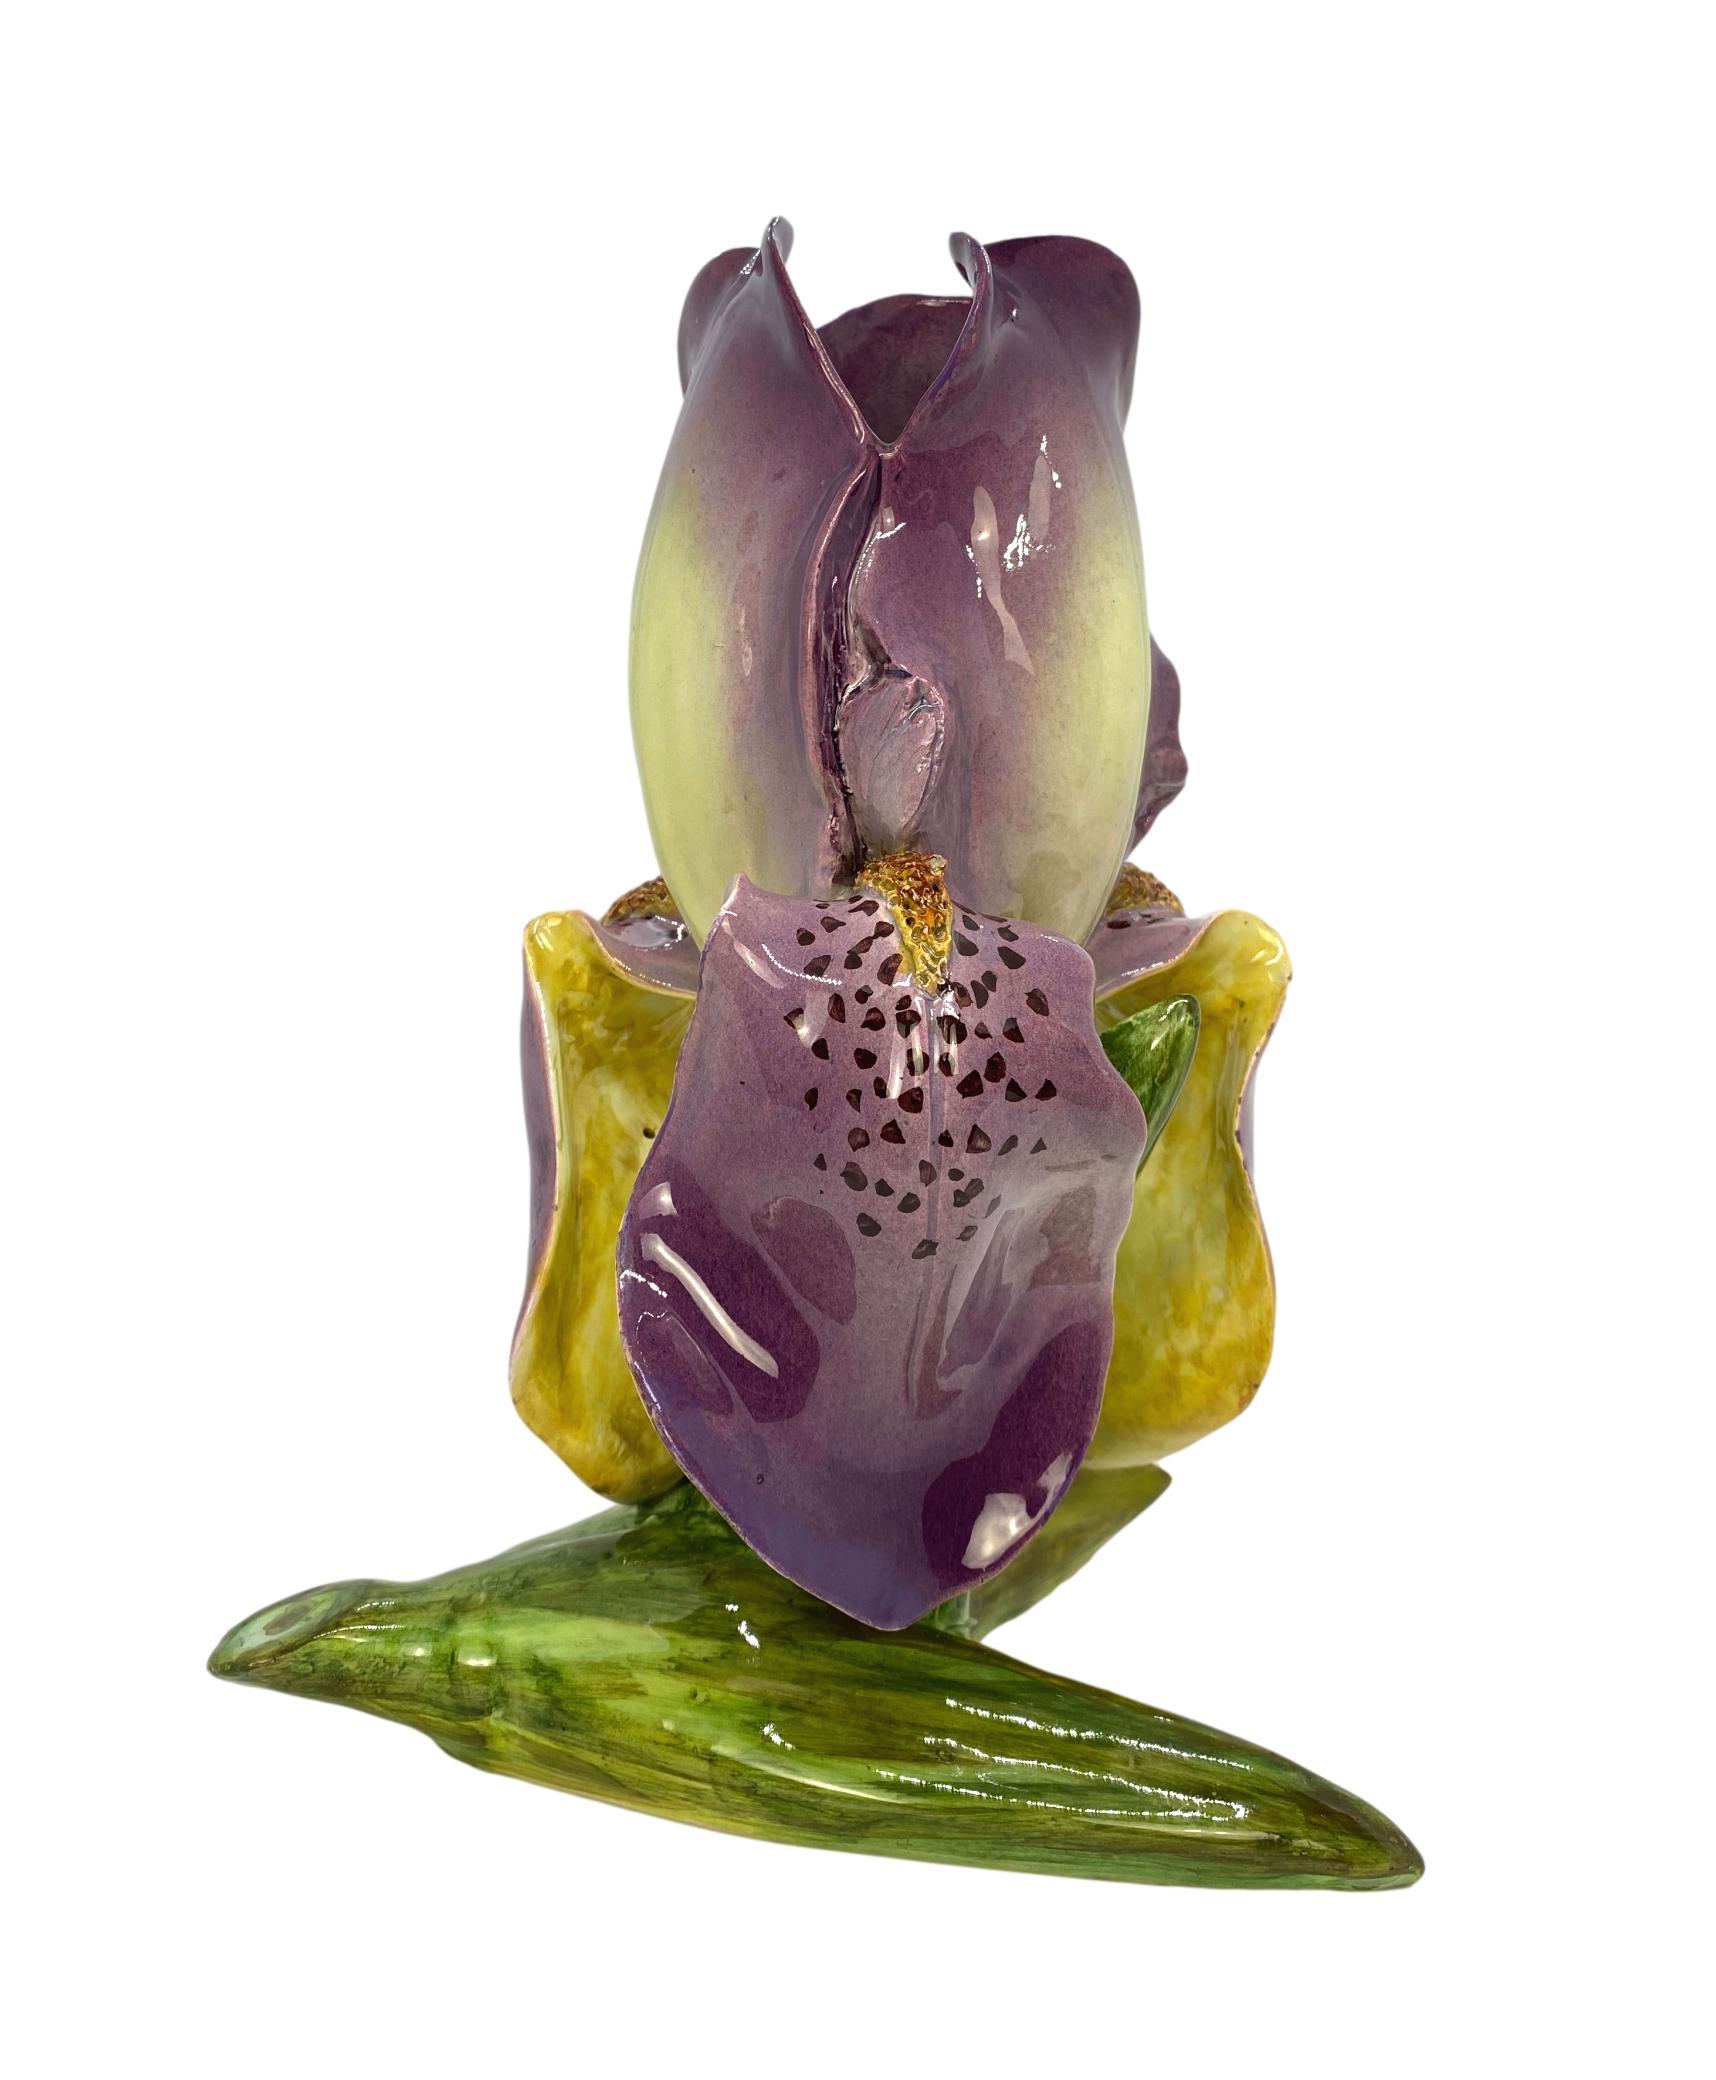 Vase en majolique française (Barbotine) en forme d'iris par Delphin Massier, vers 1870, modelé de manière naturaliste comme un iris en fleurs surdimensionné, les pétales lavande formant le corps, avec un couvercle ouvert, sur une base en forme de